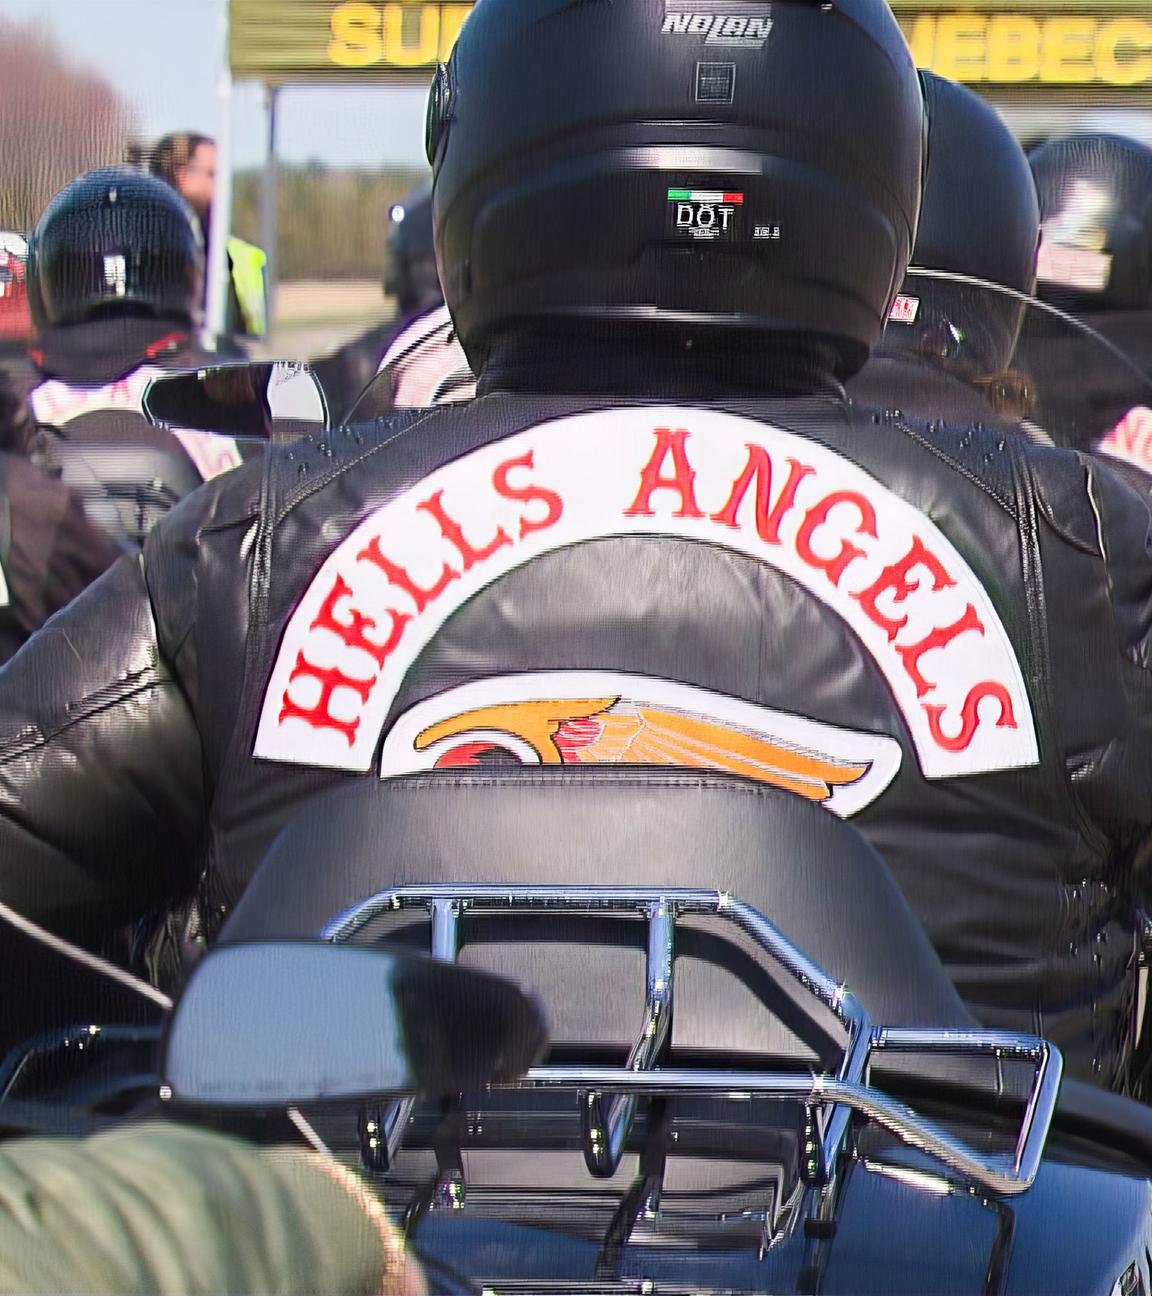 Viele Motorradfahrer mit Lederjacken, auf denen "Hells Angels" steht, fahren auf einer Straße weg von von der Kamera.